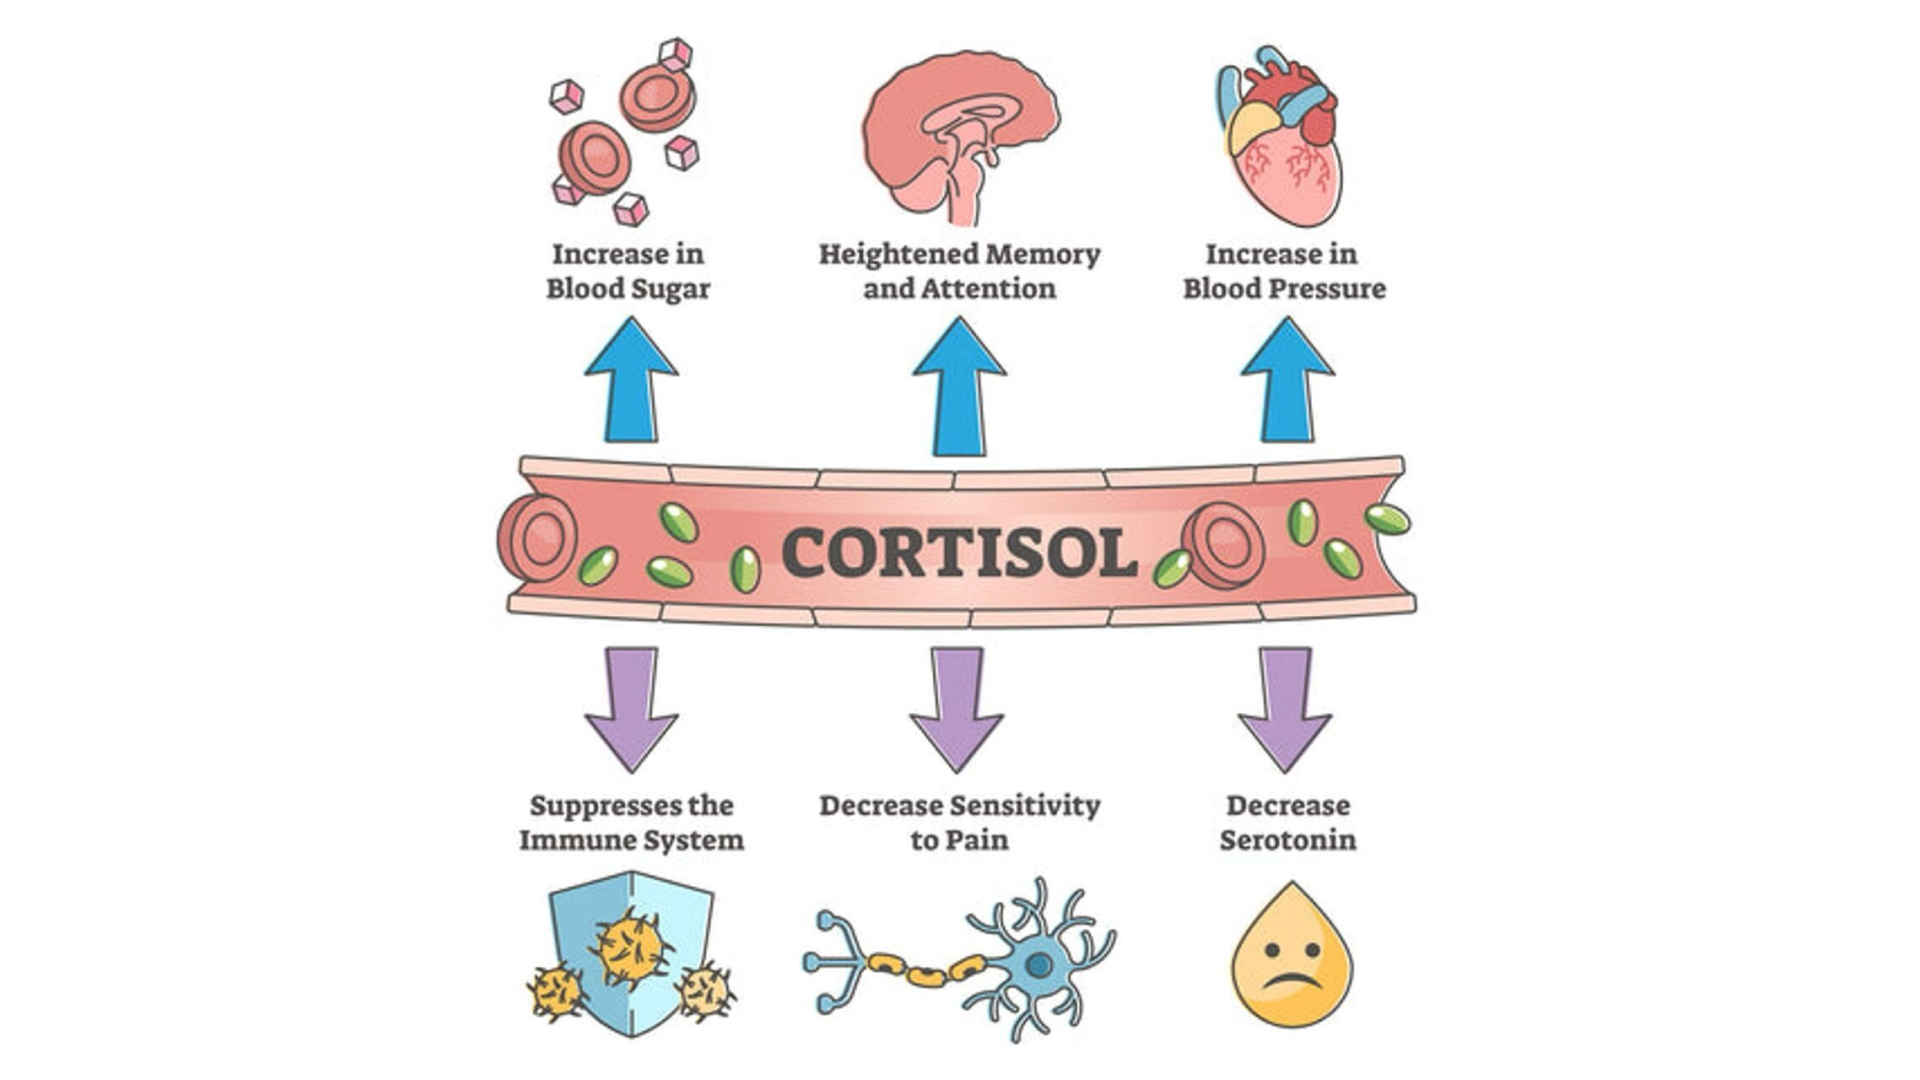 кортизол не плохой, он просто выполняет свою функцию